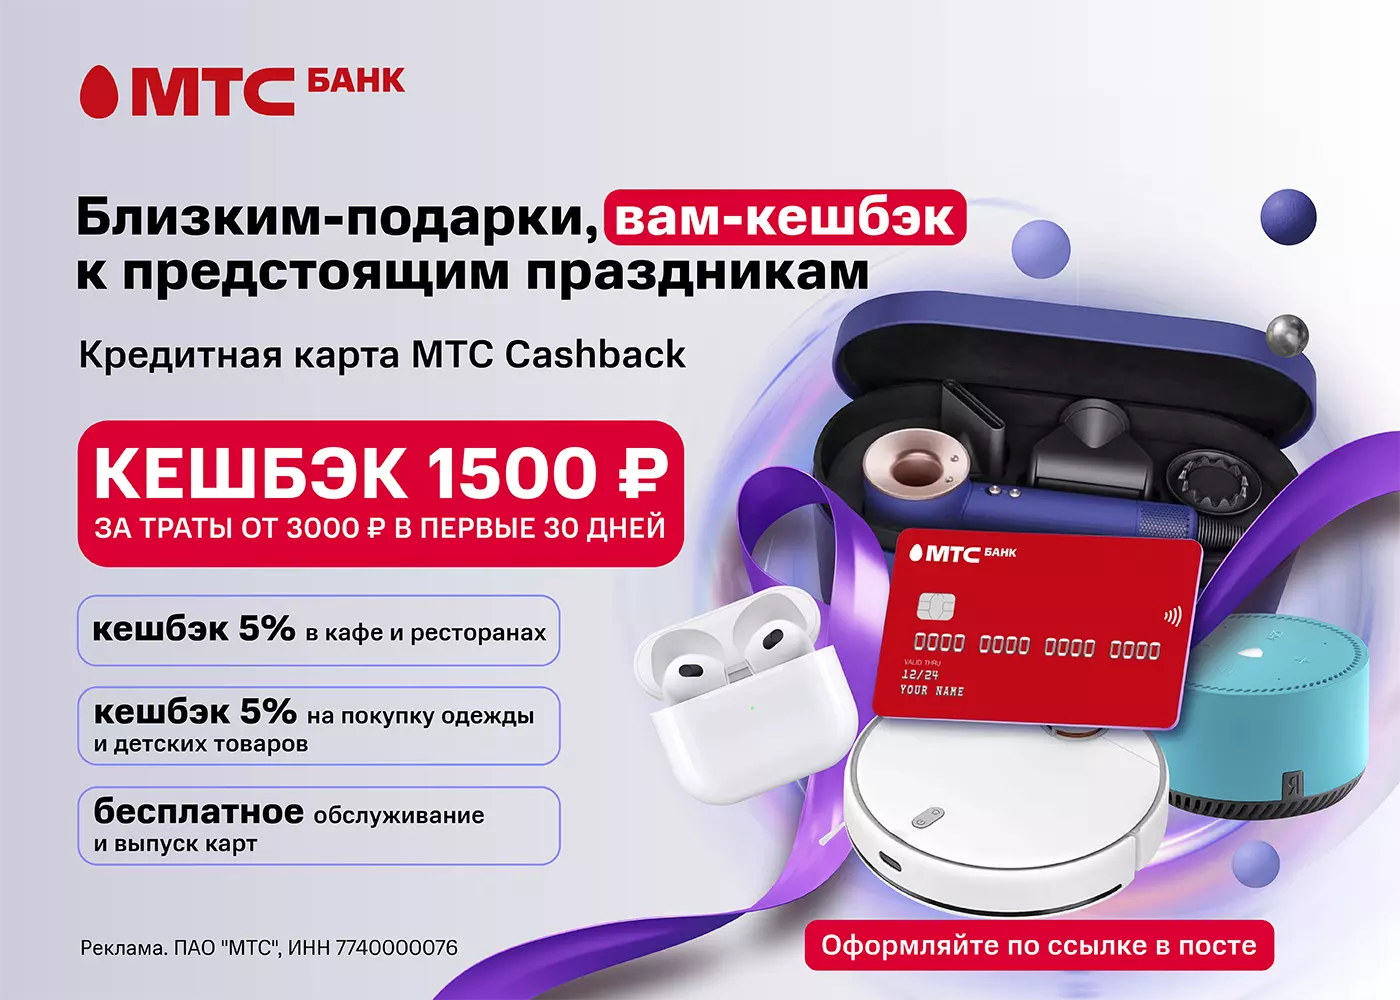 бонус 1500 рублей за бесплатную кредитную карту МТС Cashback 